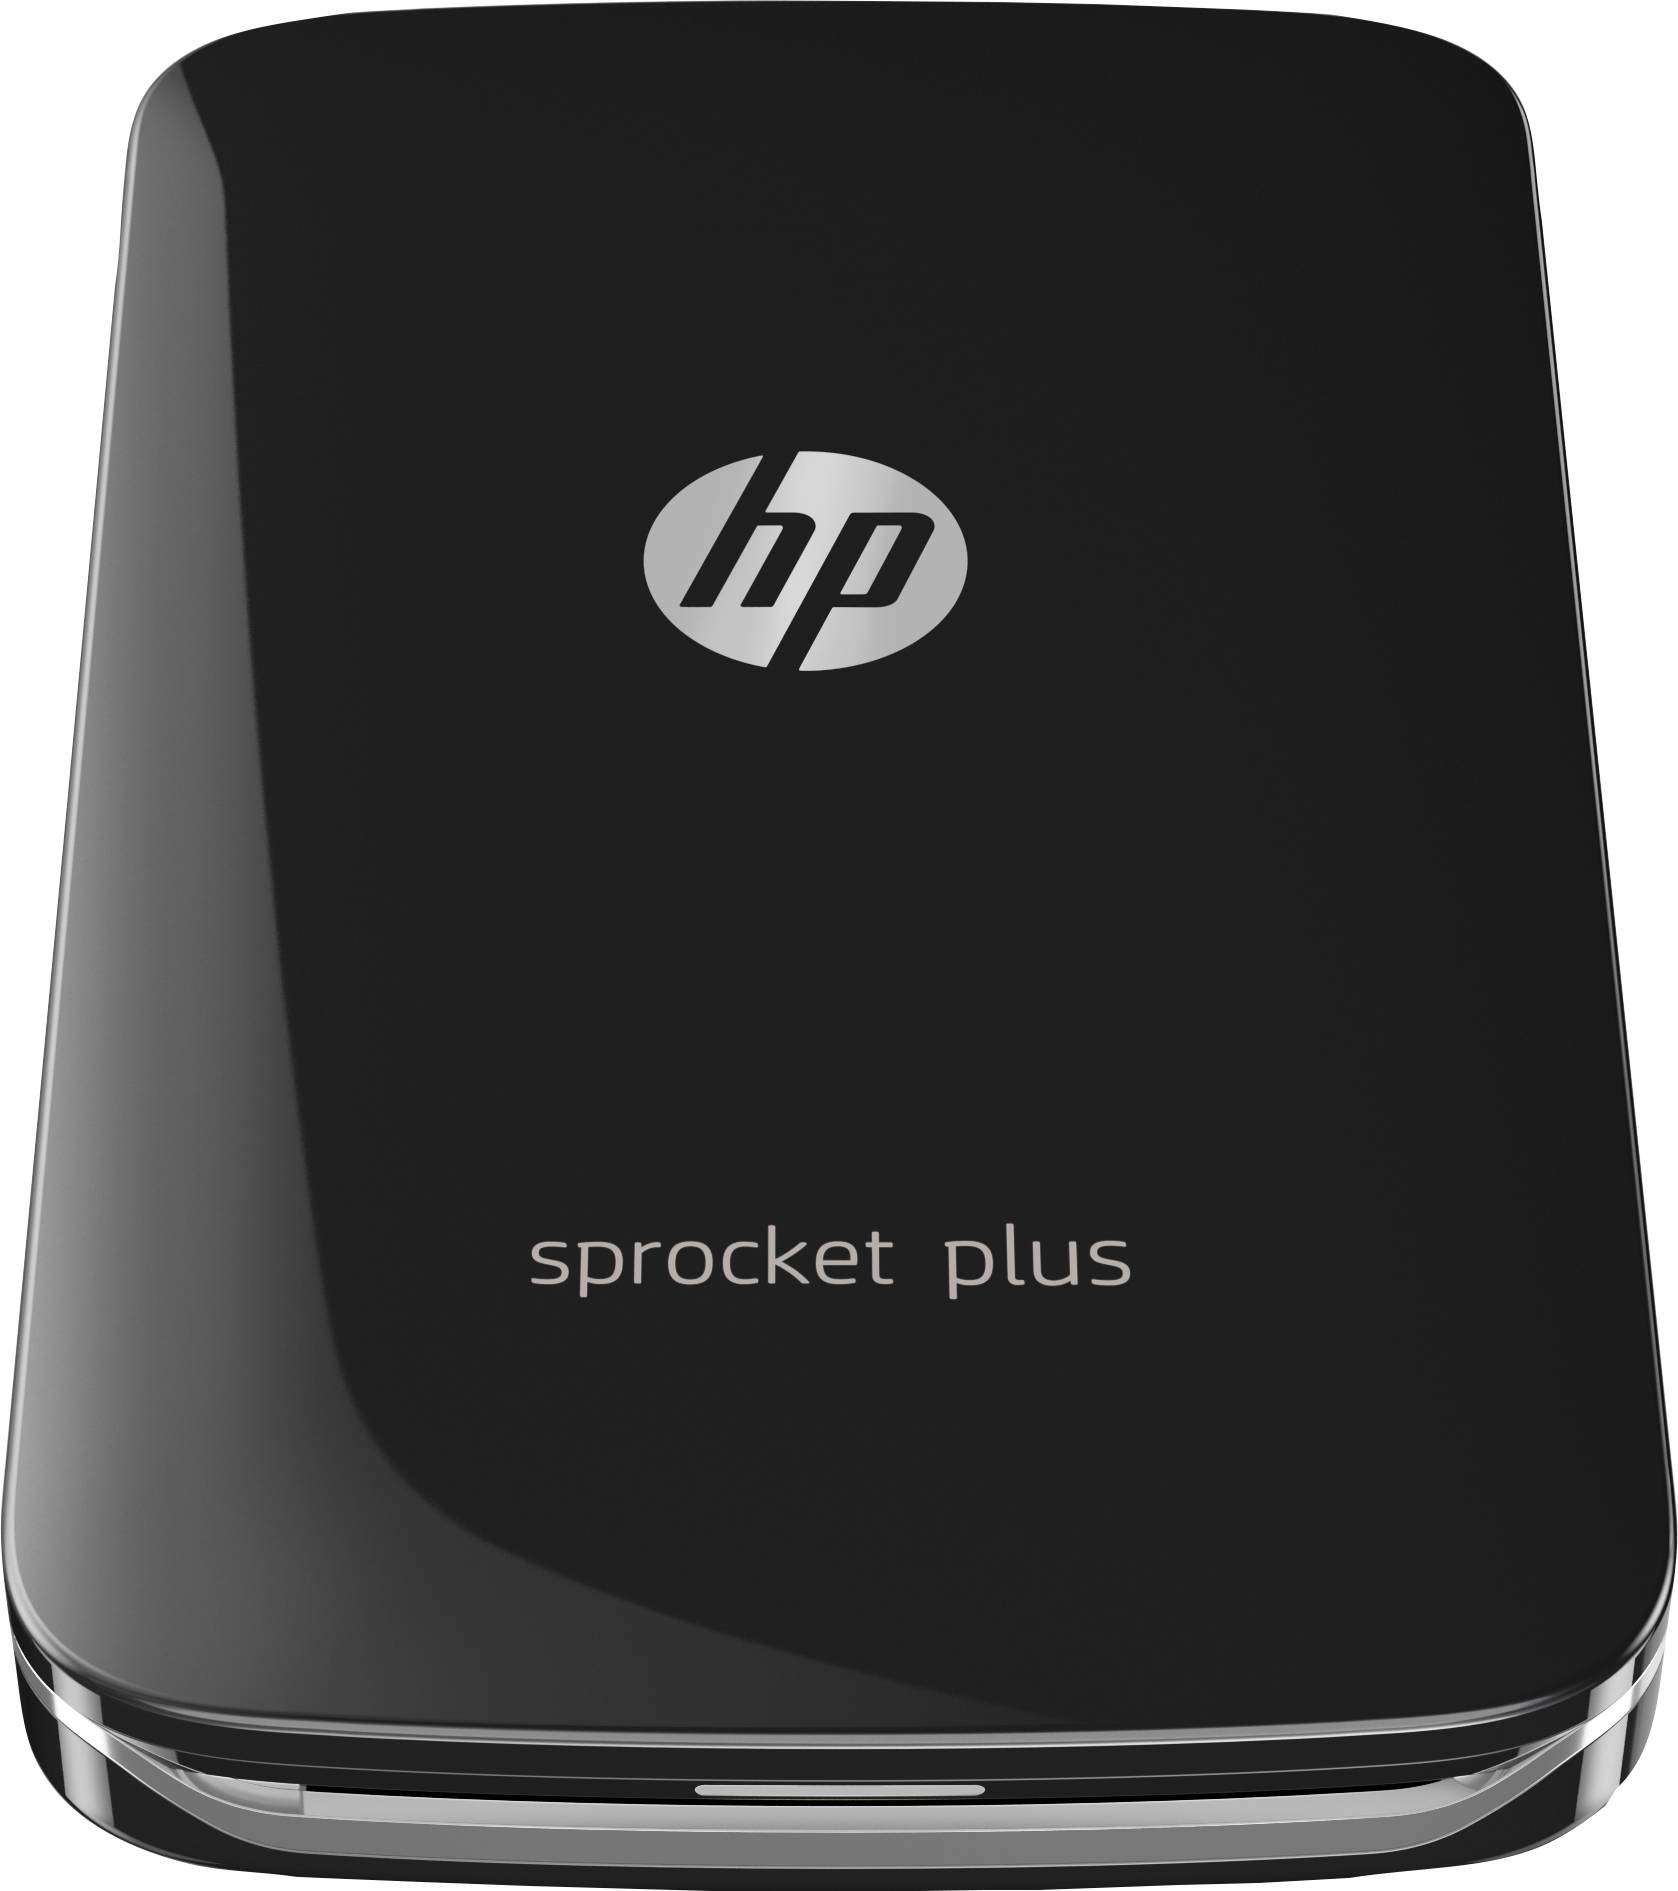 Rca Informatique - Image du produit : HP SPROCKET PLUS  NOIRE PHOTO PRINTER 2.3X3.4IN